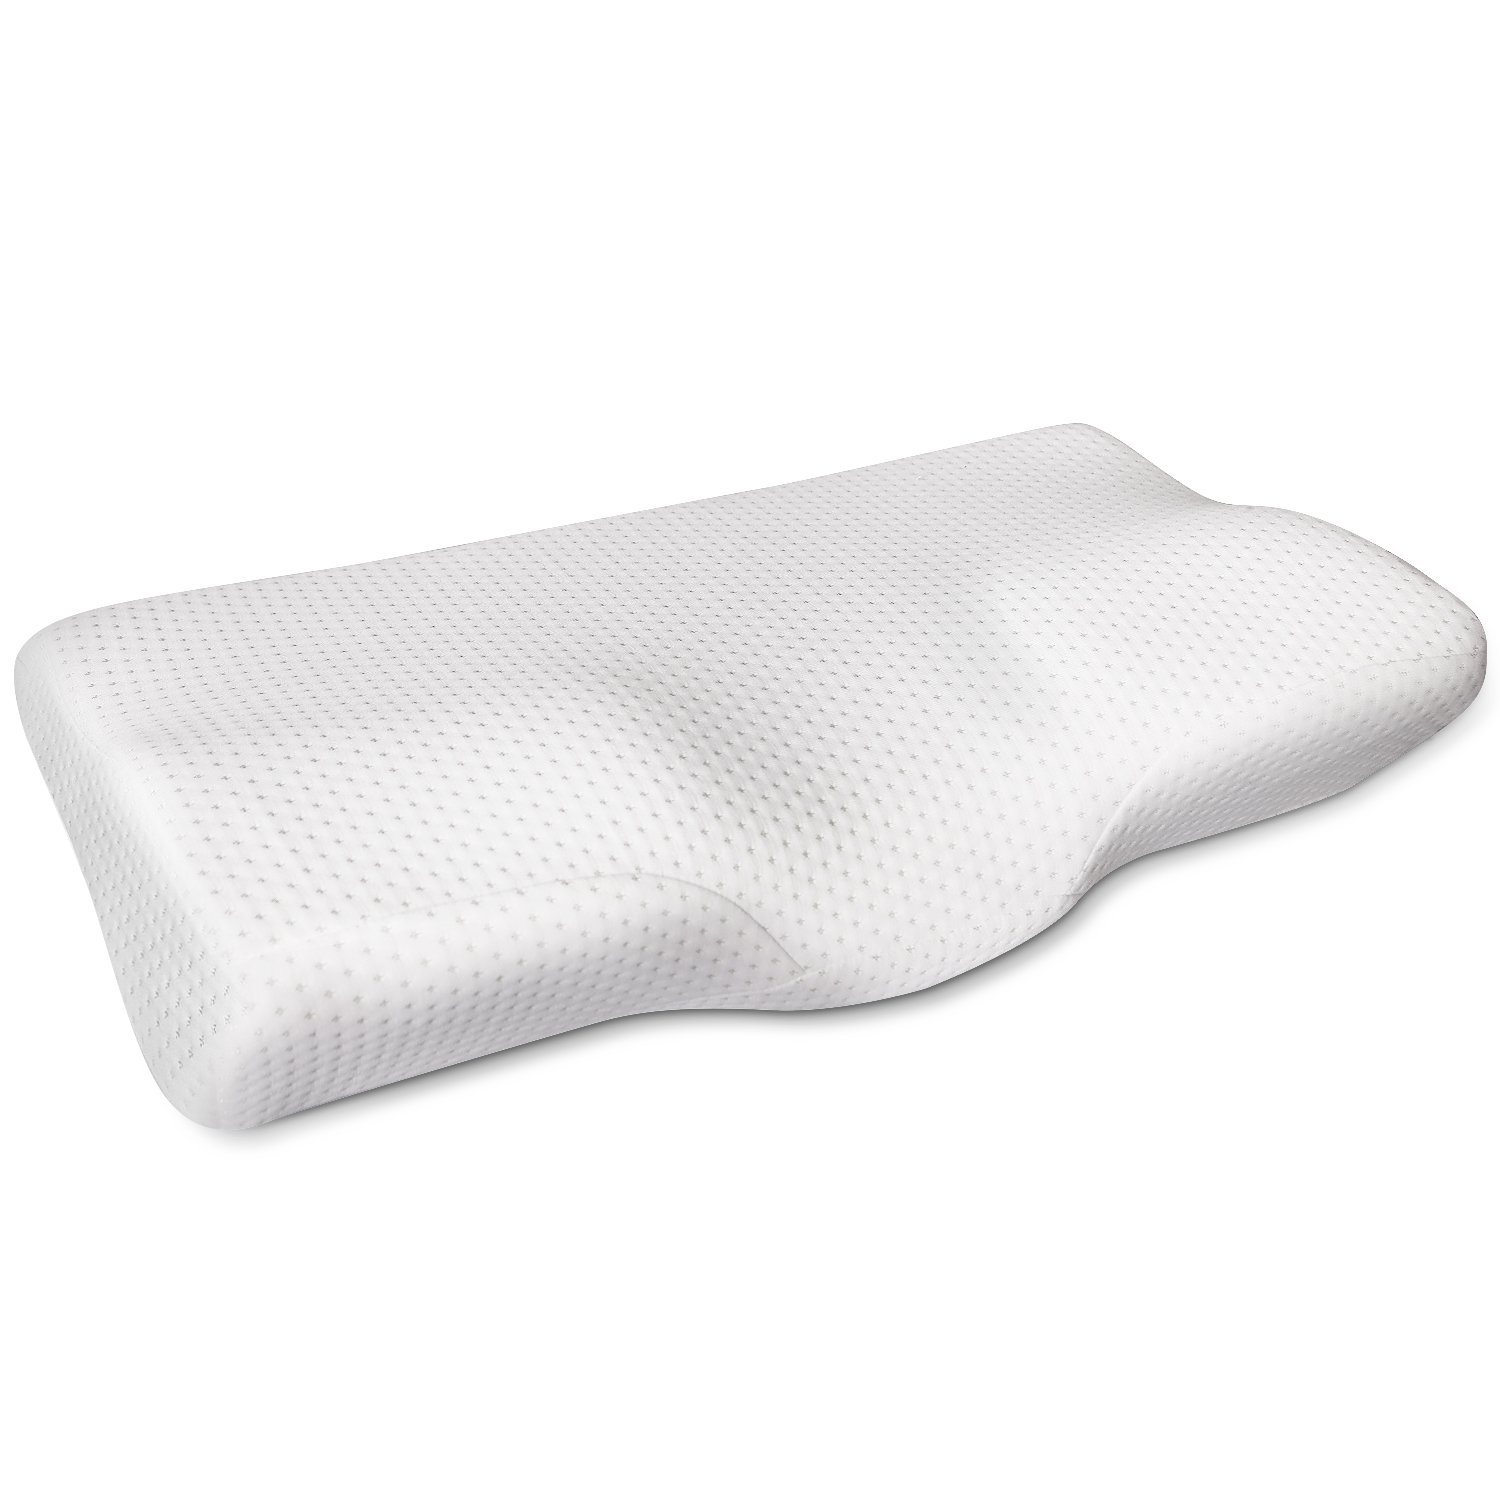 5位：MOFIR 枕 低反発 まくら マクラ 首・頭・肩をやさしく支える 健康枕 ヘルスケア枕 人間工学設計 いびき防止 頭痛改善 肩こり対策 安眠 快眠 仰向き横向き対応 洗える ピロー